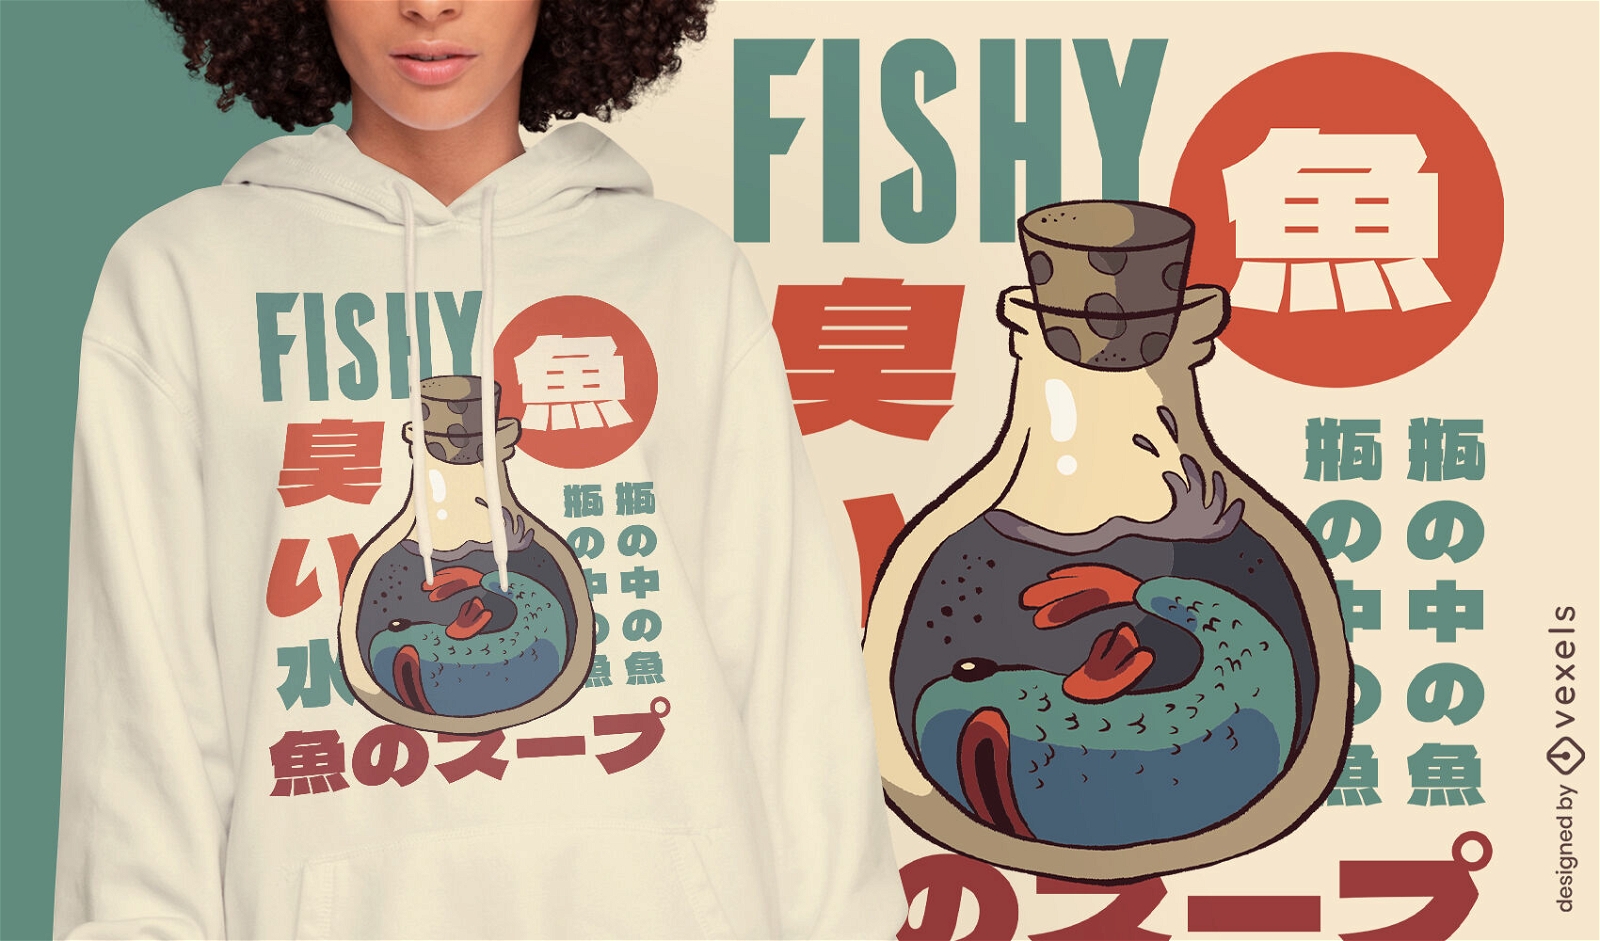 Animal marinho de peixe em um design de camiseta de jarra